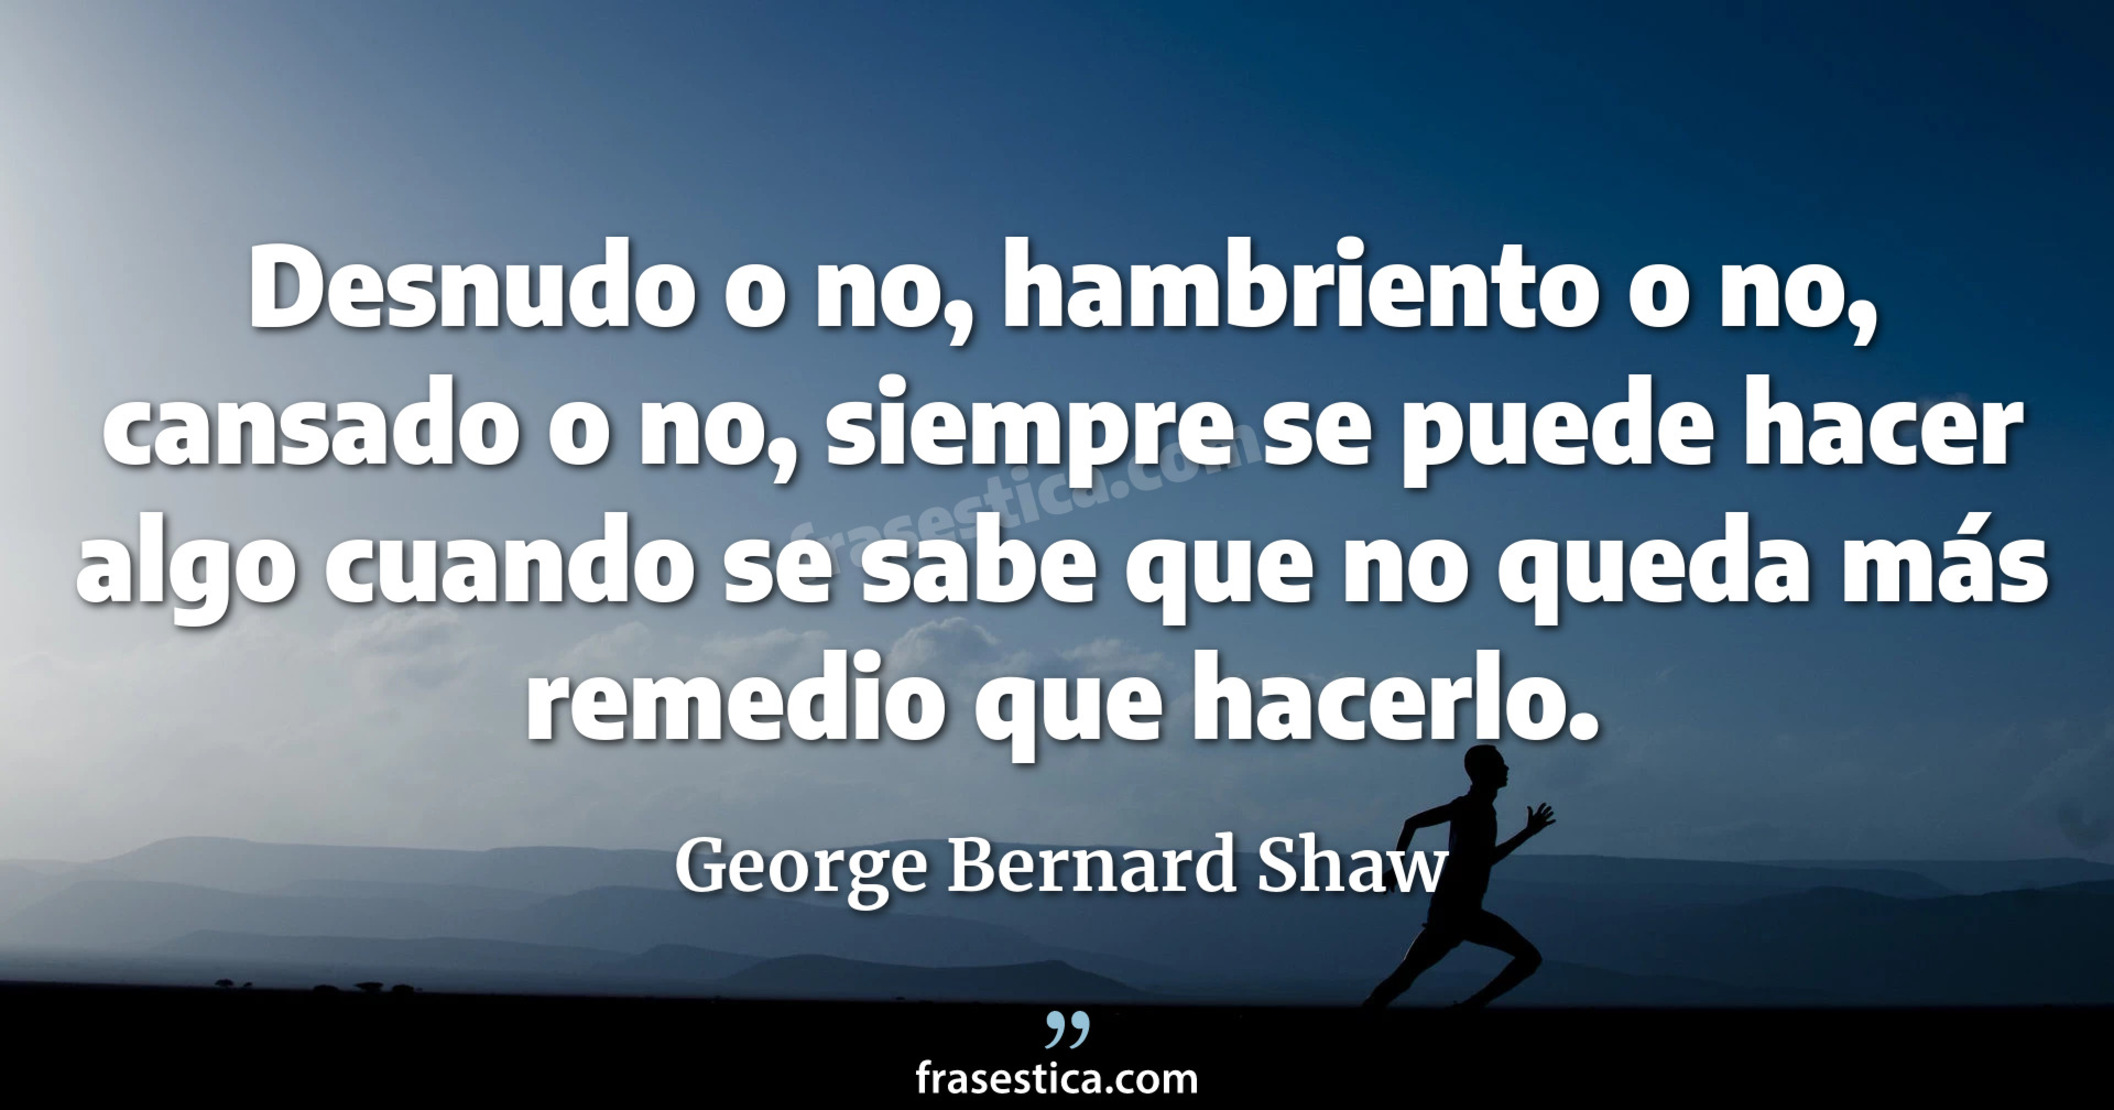 Desnudo o no, hambriento o no, cansado o no, siempre se puede hacer algo cuando se sabe que no queda más remedio que hacerlo. - George Bernard Shaw